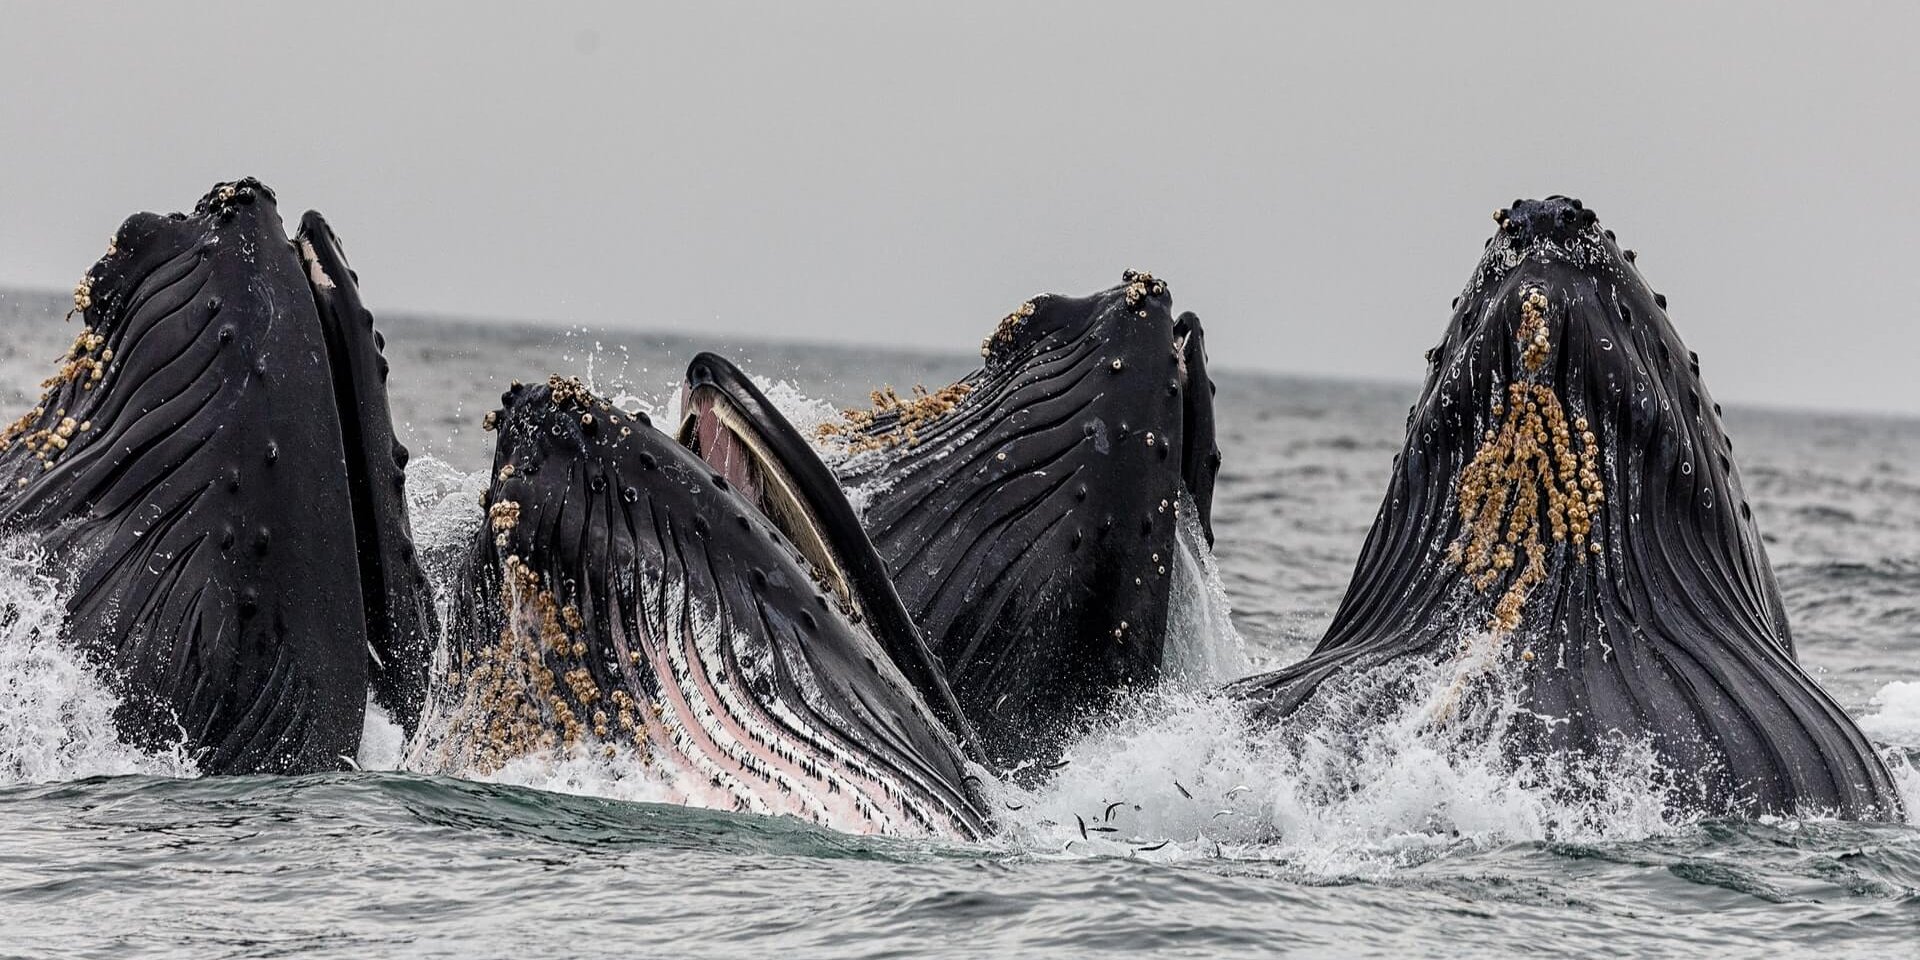 Cuatro ballenas jorobadas saltando del océano